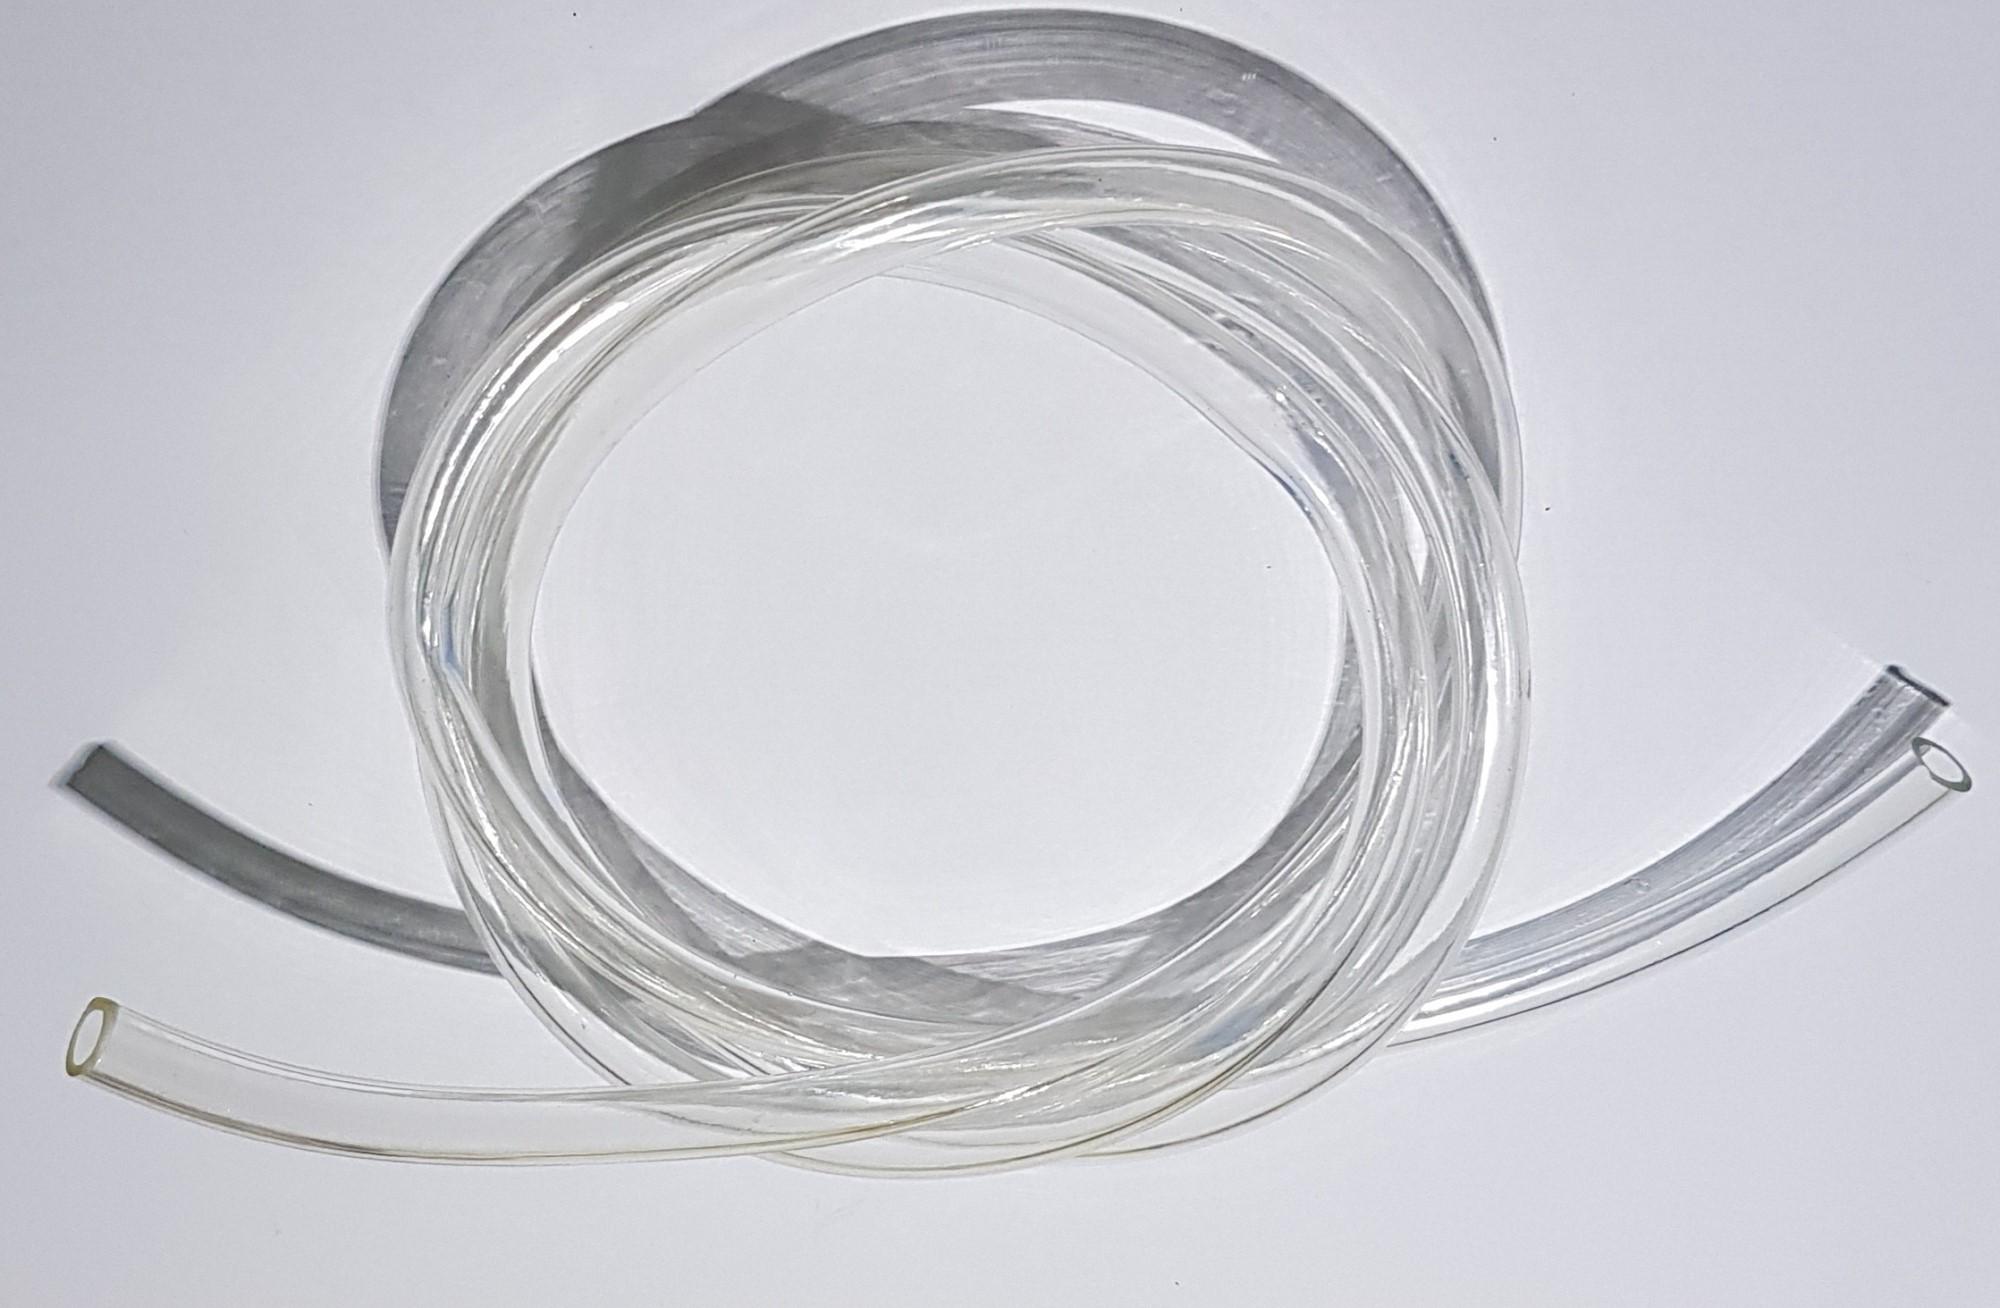 Ống nhựa dẻo trong suốt - Ống nước dẻo - Ống Pipe 4mm dài 2 Mét